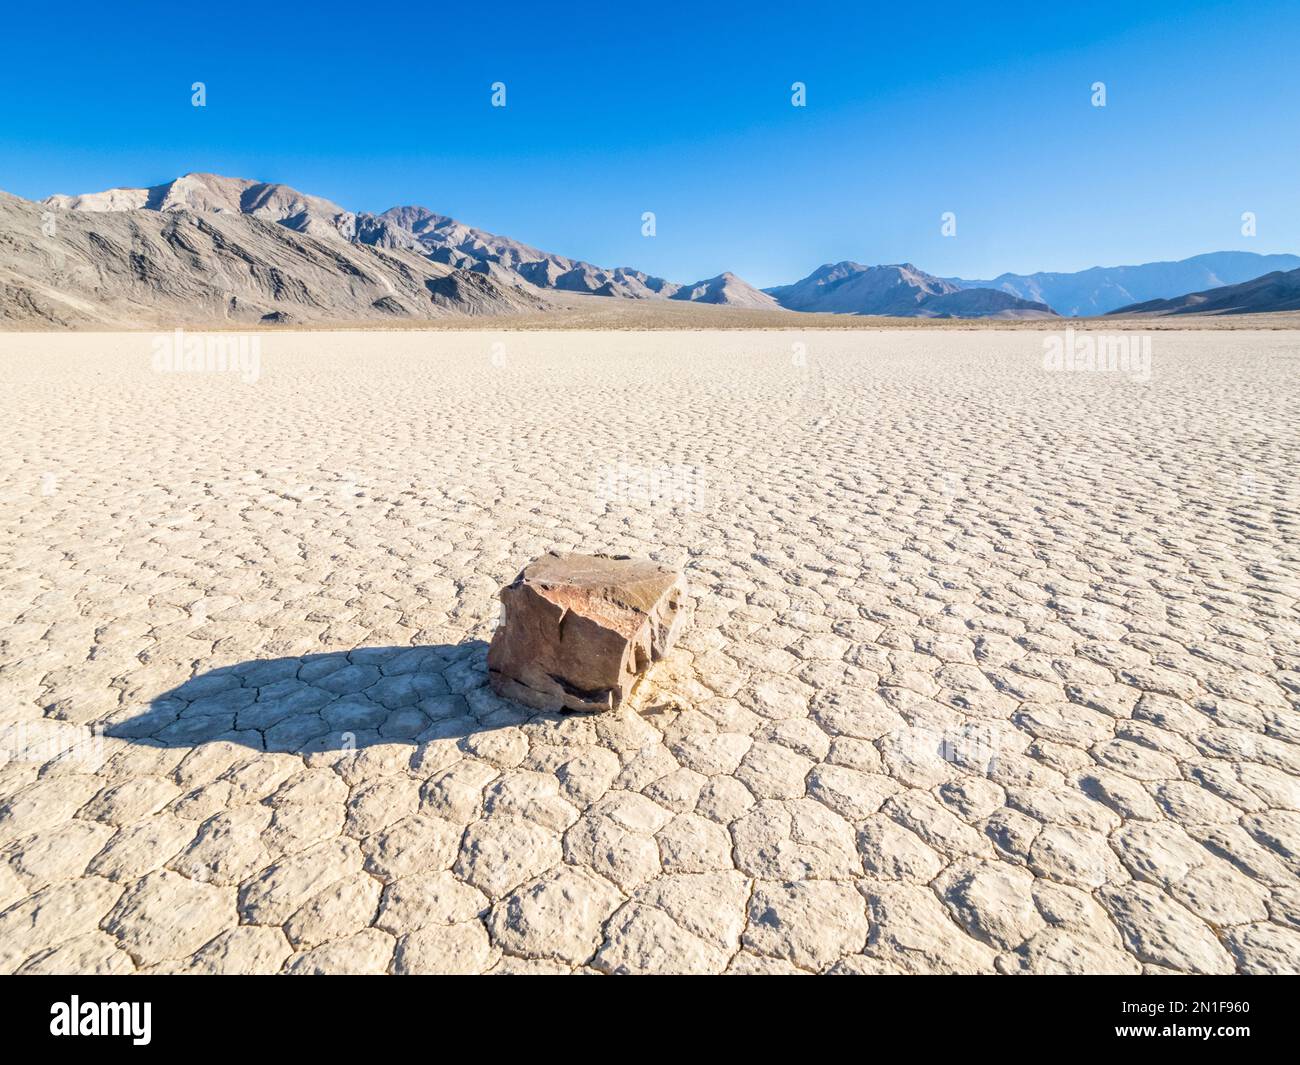 Un rocher en mouvement à l'hippodrome, une playa ou séché au lac, dans le parc national de la Vallée de la mort, Californie, États-Unis d'Amérique, Amérique du Nord Banque D'Images